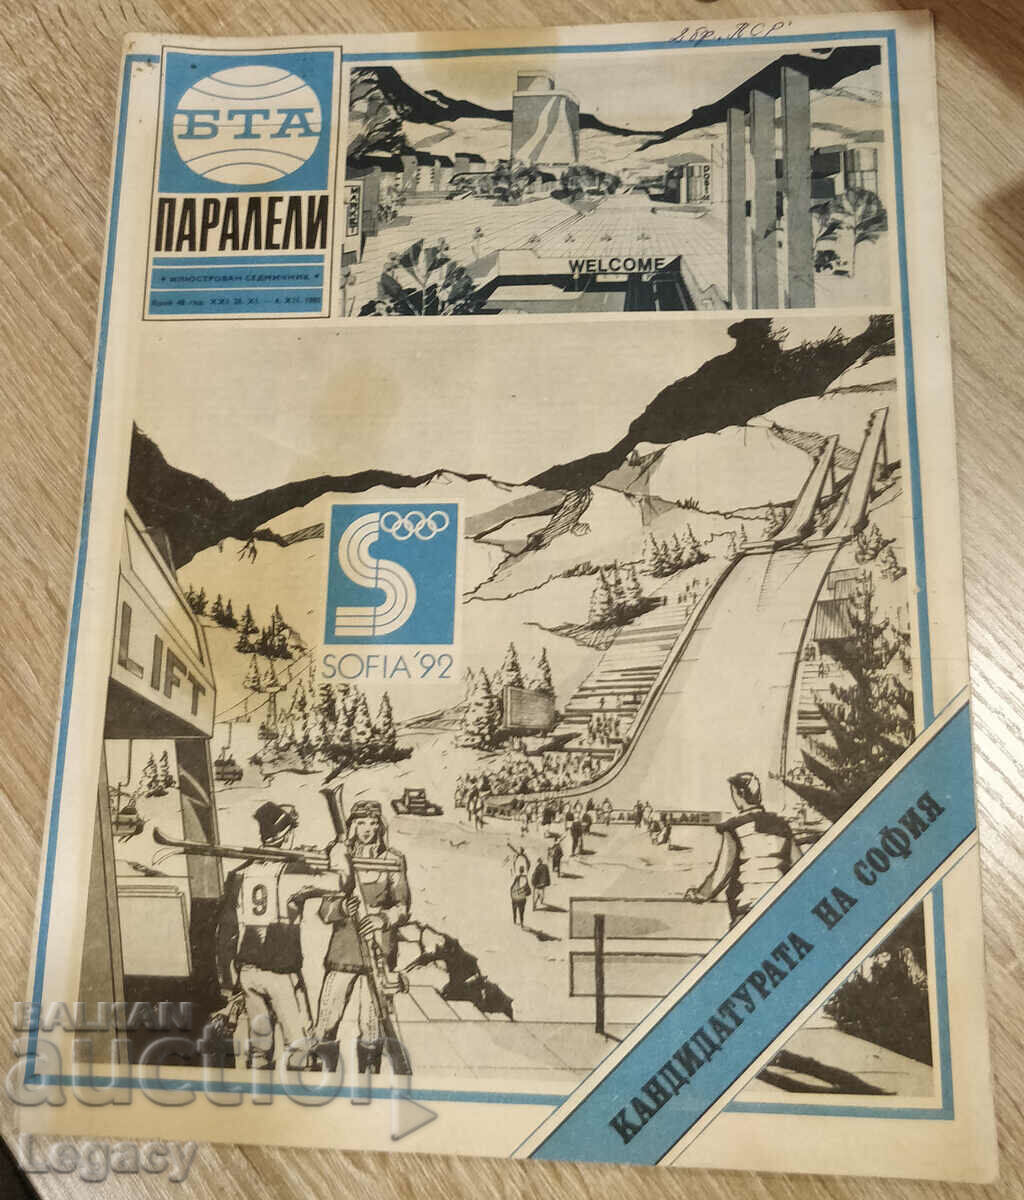 1985 BTA Parallels magazine, issue 48